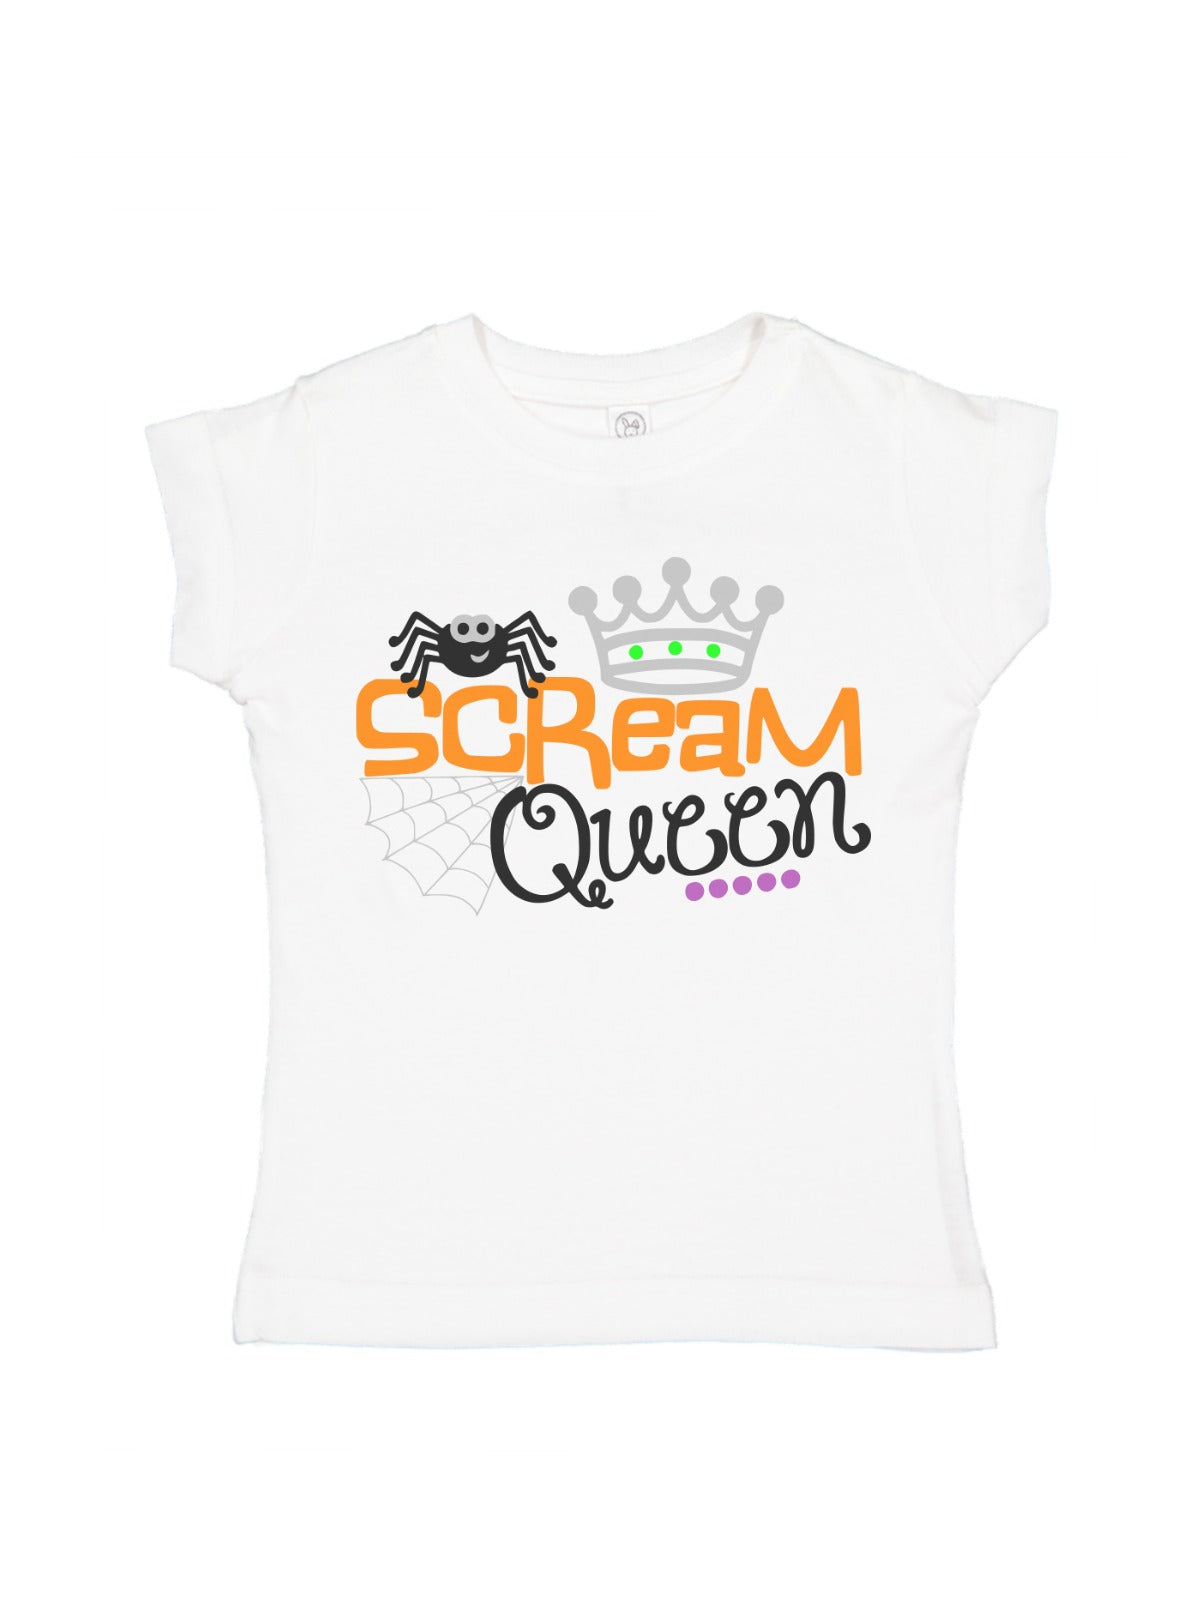 scream queen girl's Halloween spider shirt